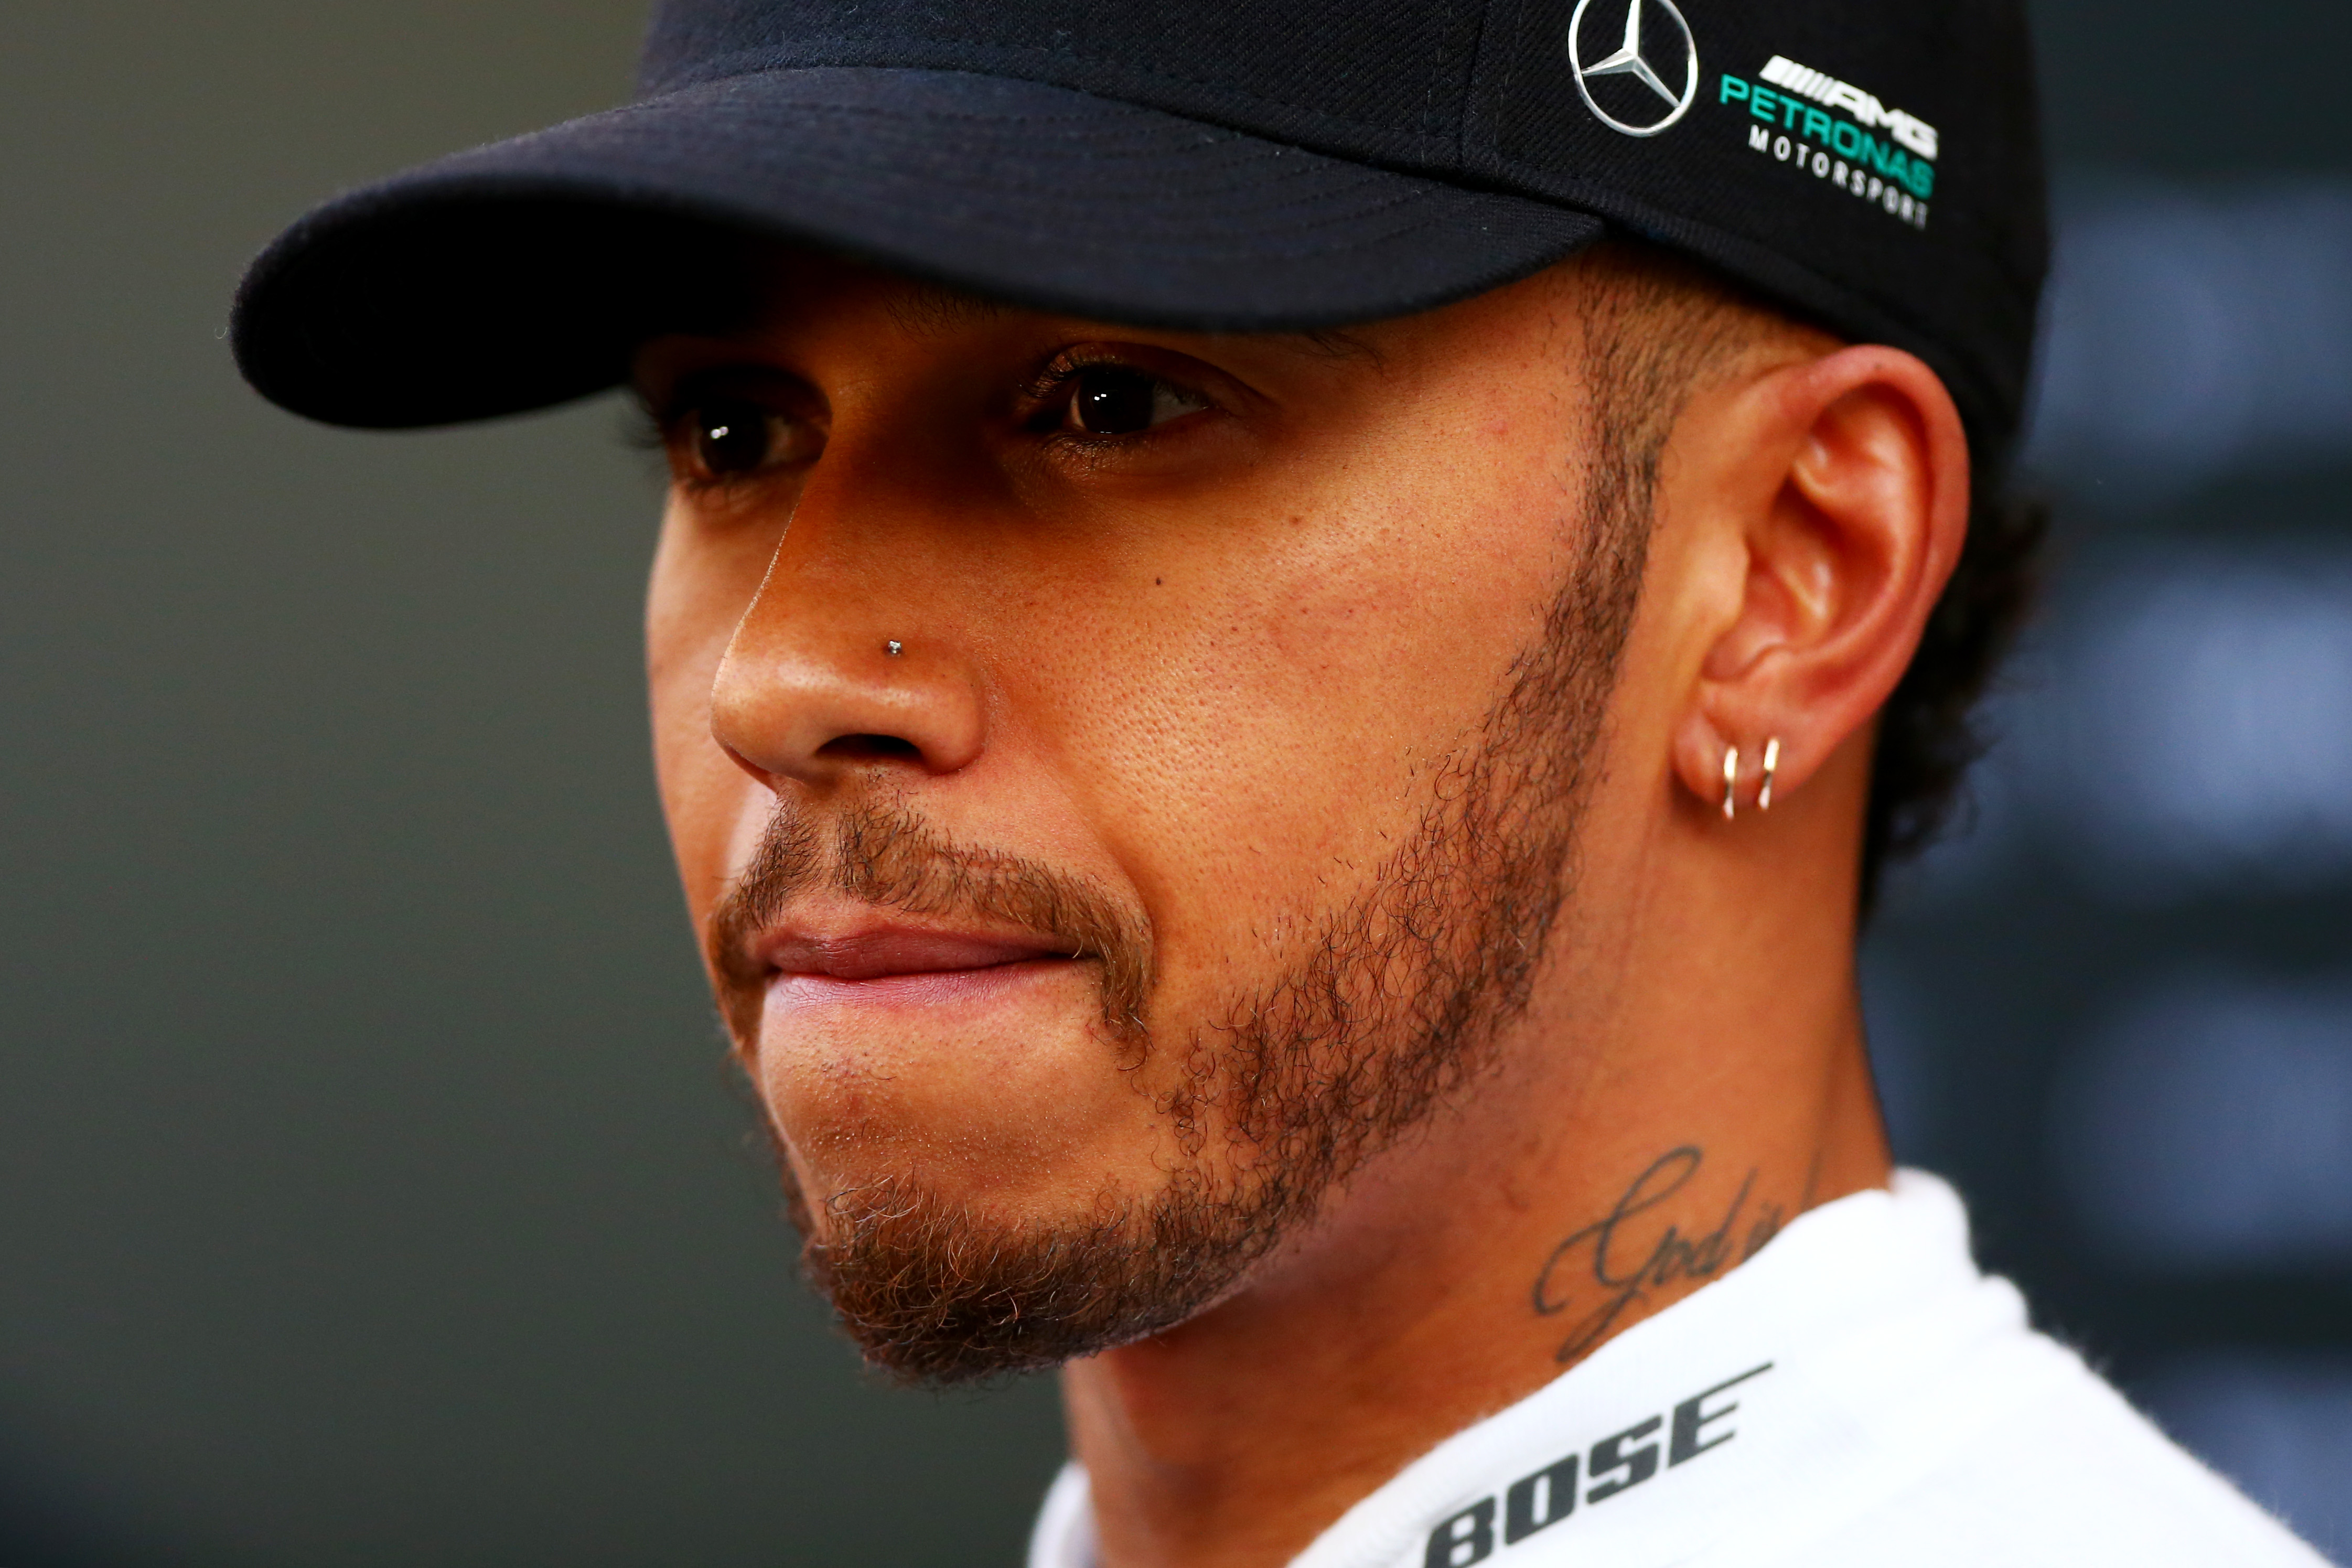 Internet arremete contra Lewis Hamilton por comentario sexista a su sobrino